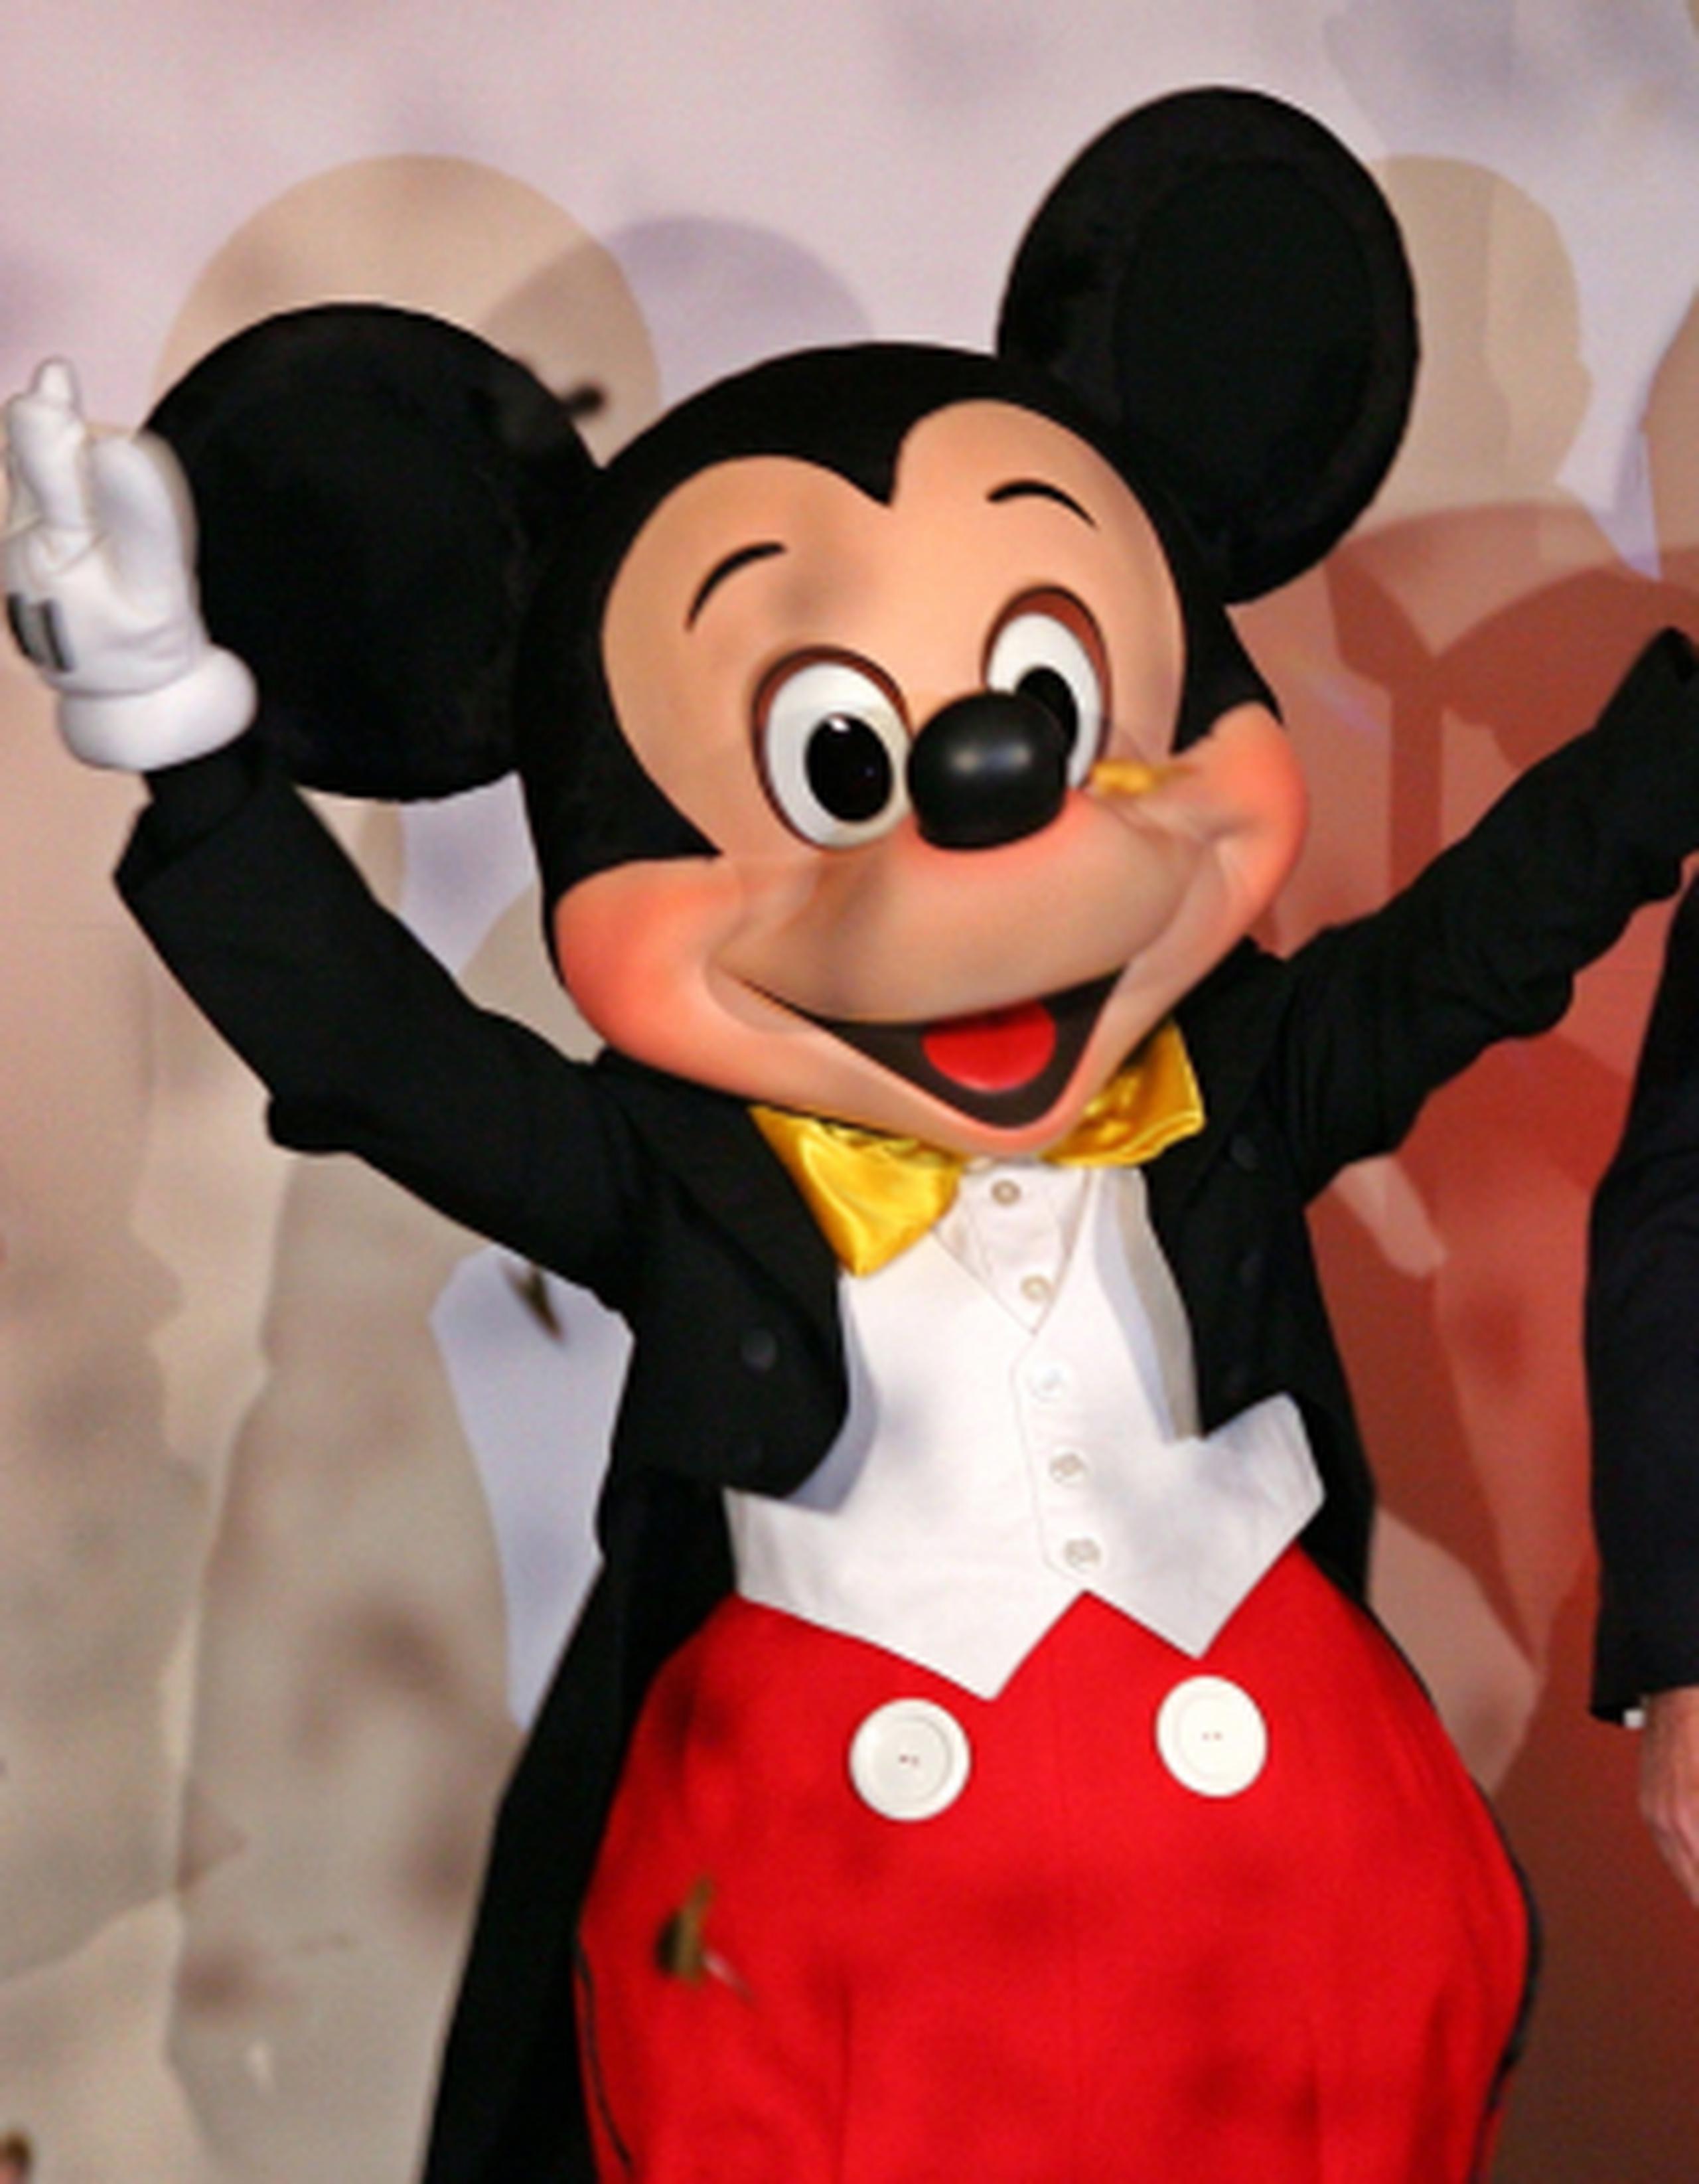 El ratón más famoso del mundo, al que originalmente puso voz el propio Disney, es hoy todo un icono de la cultura estadounidense. (AP/Vincent Yu)